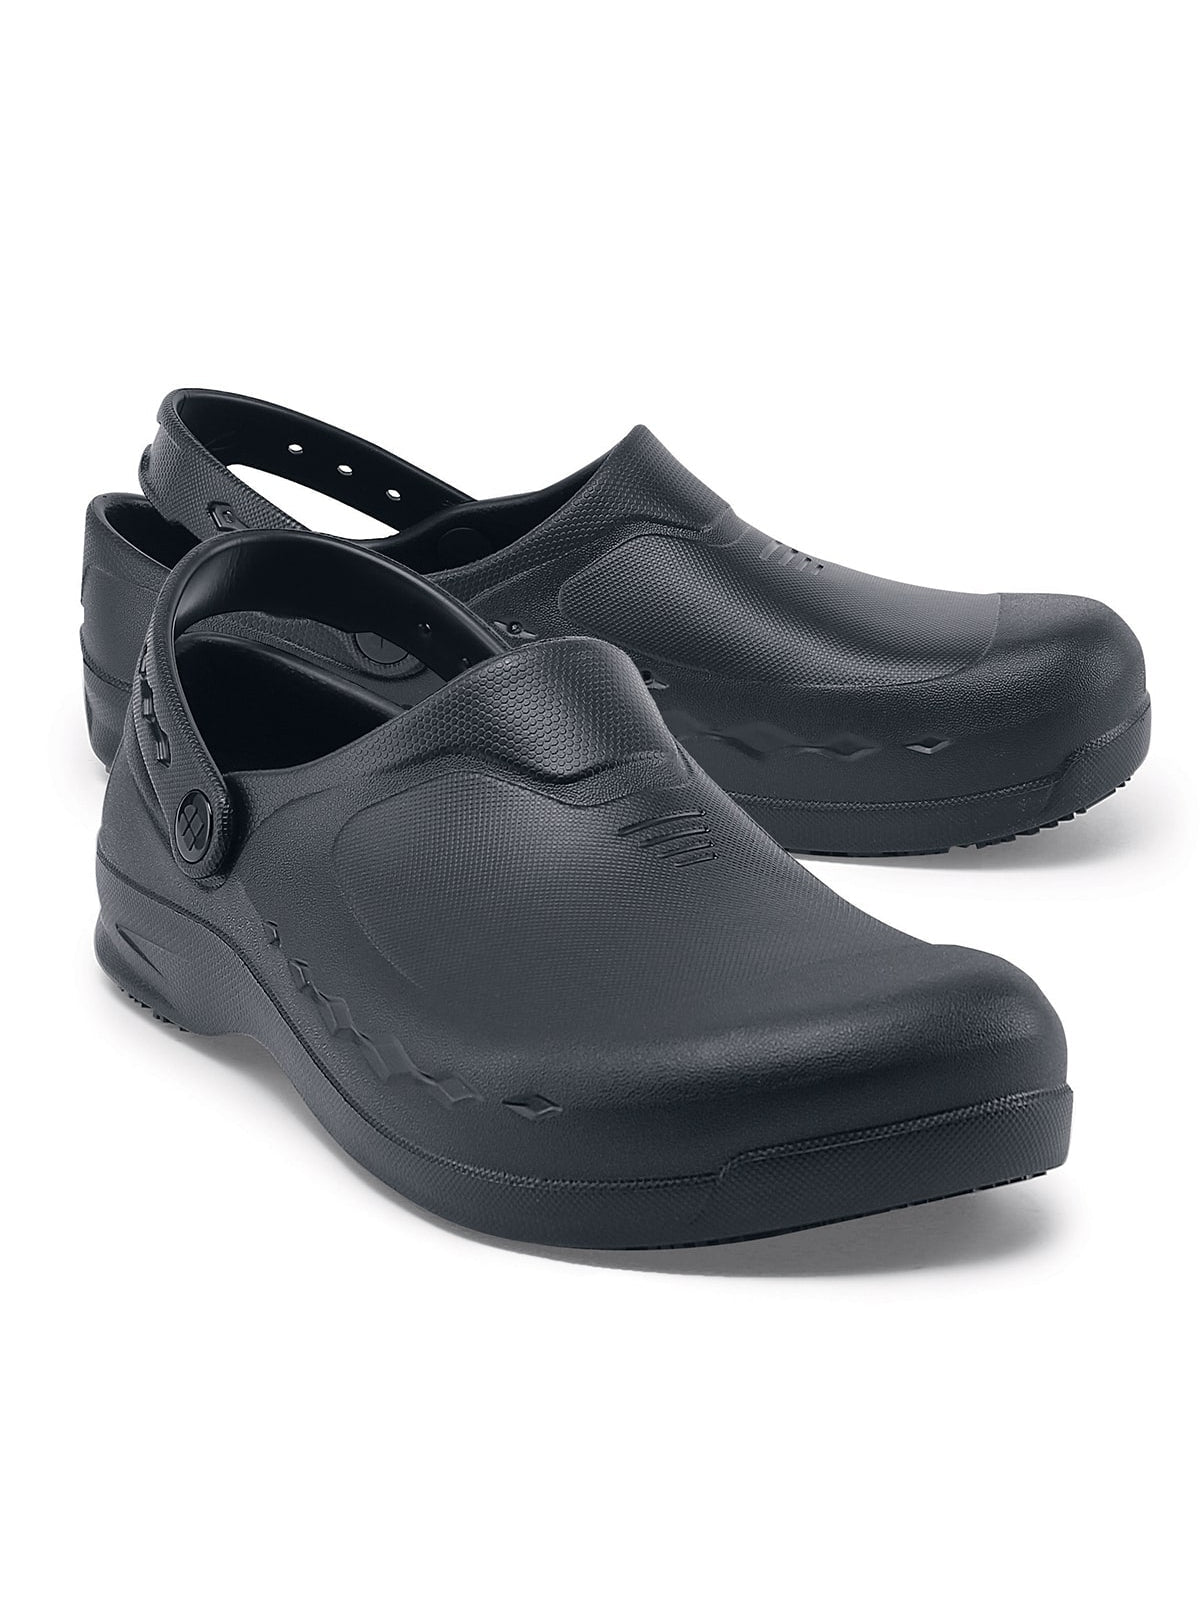 Unisex Work Shoe Zinc Black by Shoes For Crews -  ChefsCotton